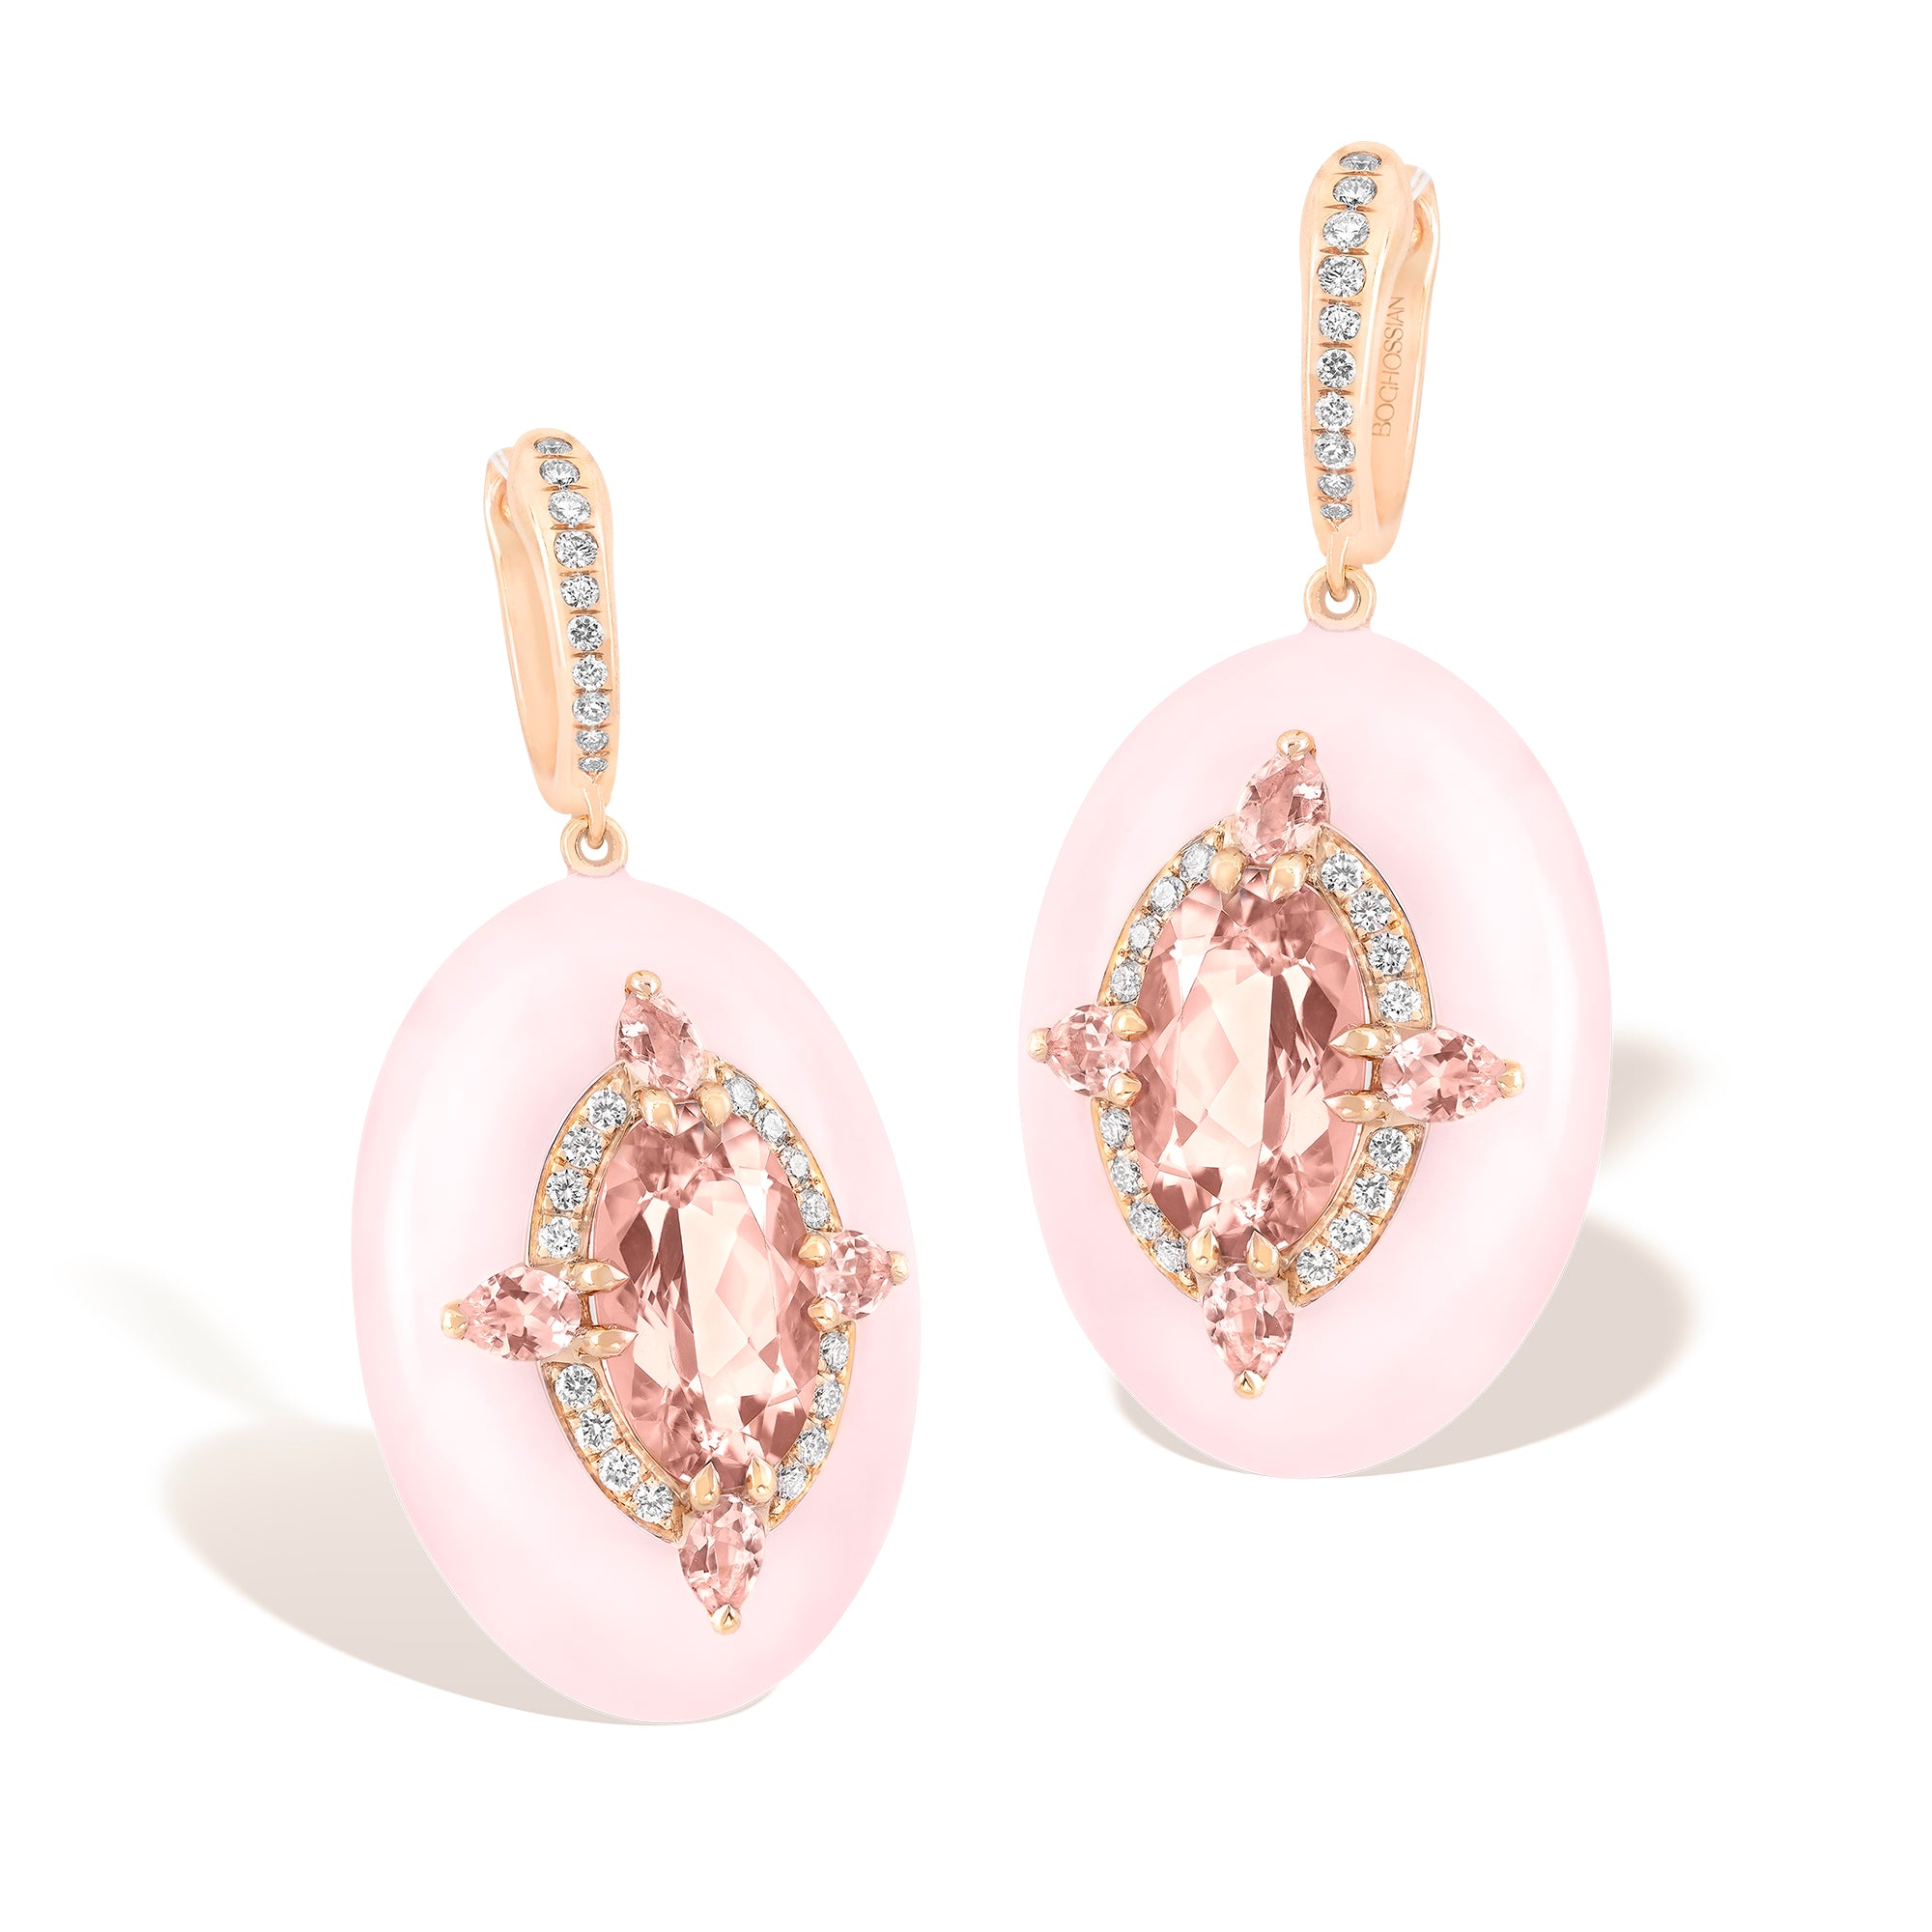 Reveal - Morganite and Pink Opal Earrings